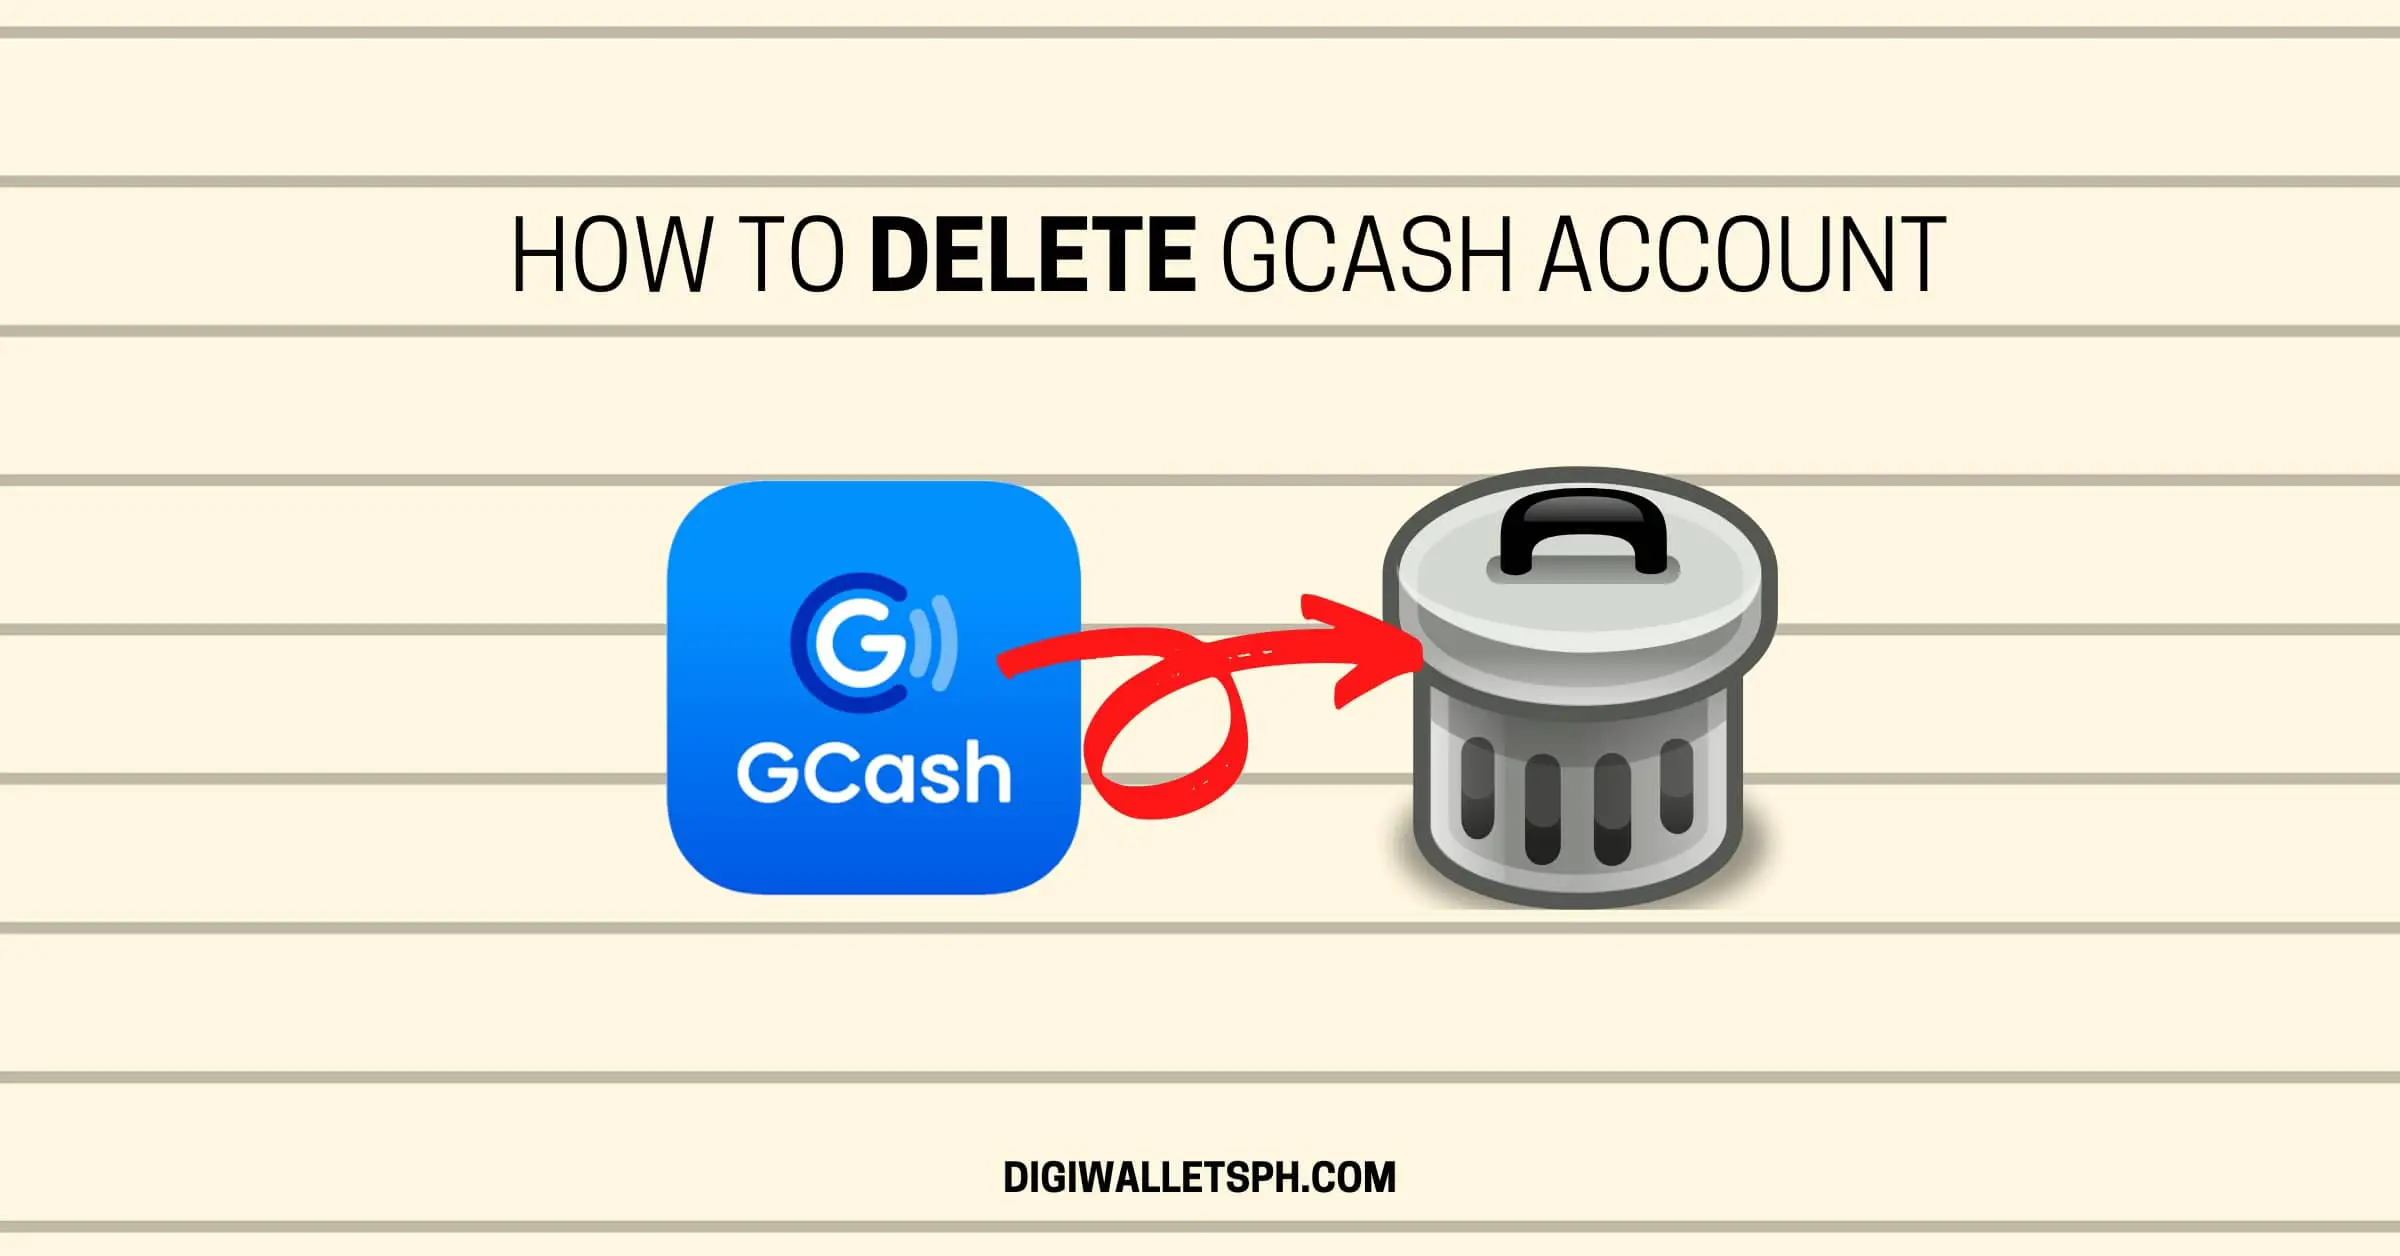 How to delete GCash account